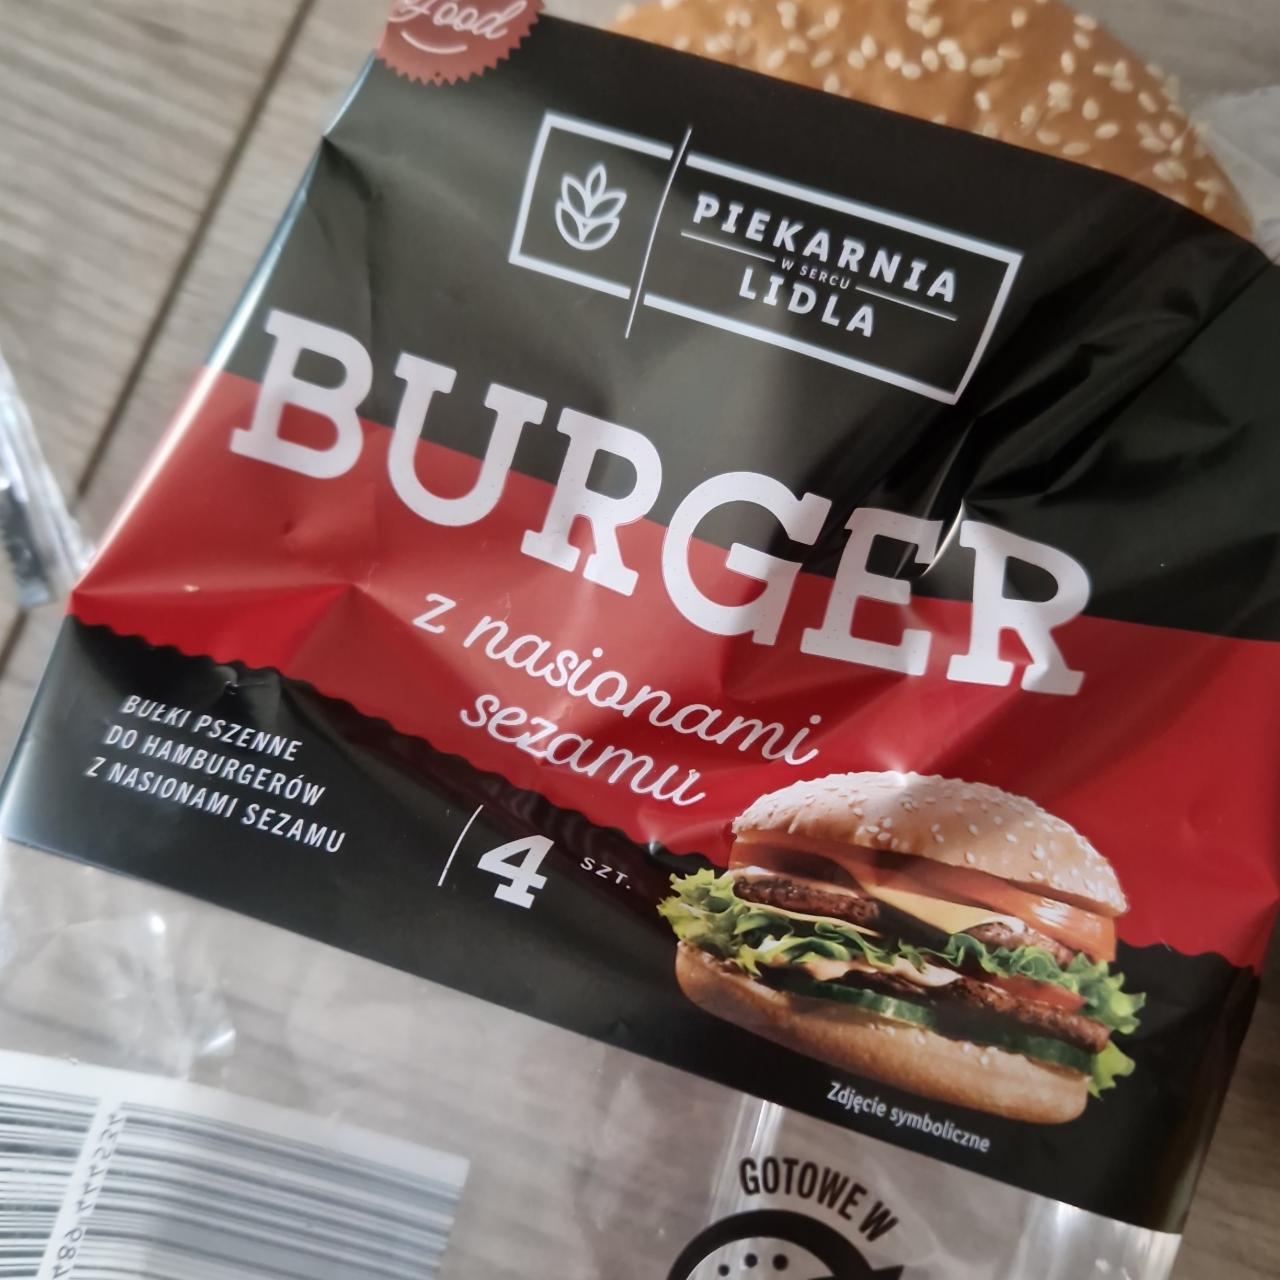 Фото - Булка для бургерів з кунжутом Burger Piekarnia Lidla